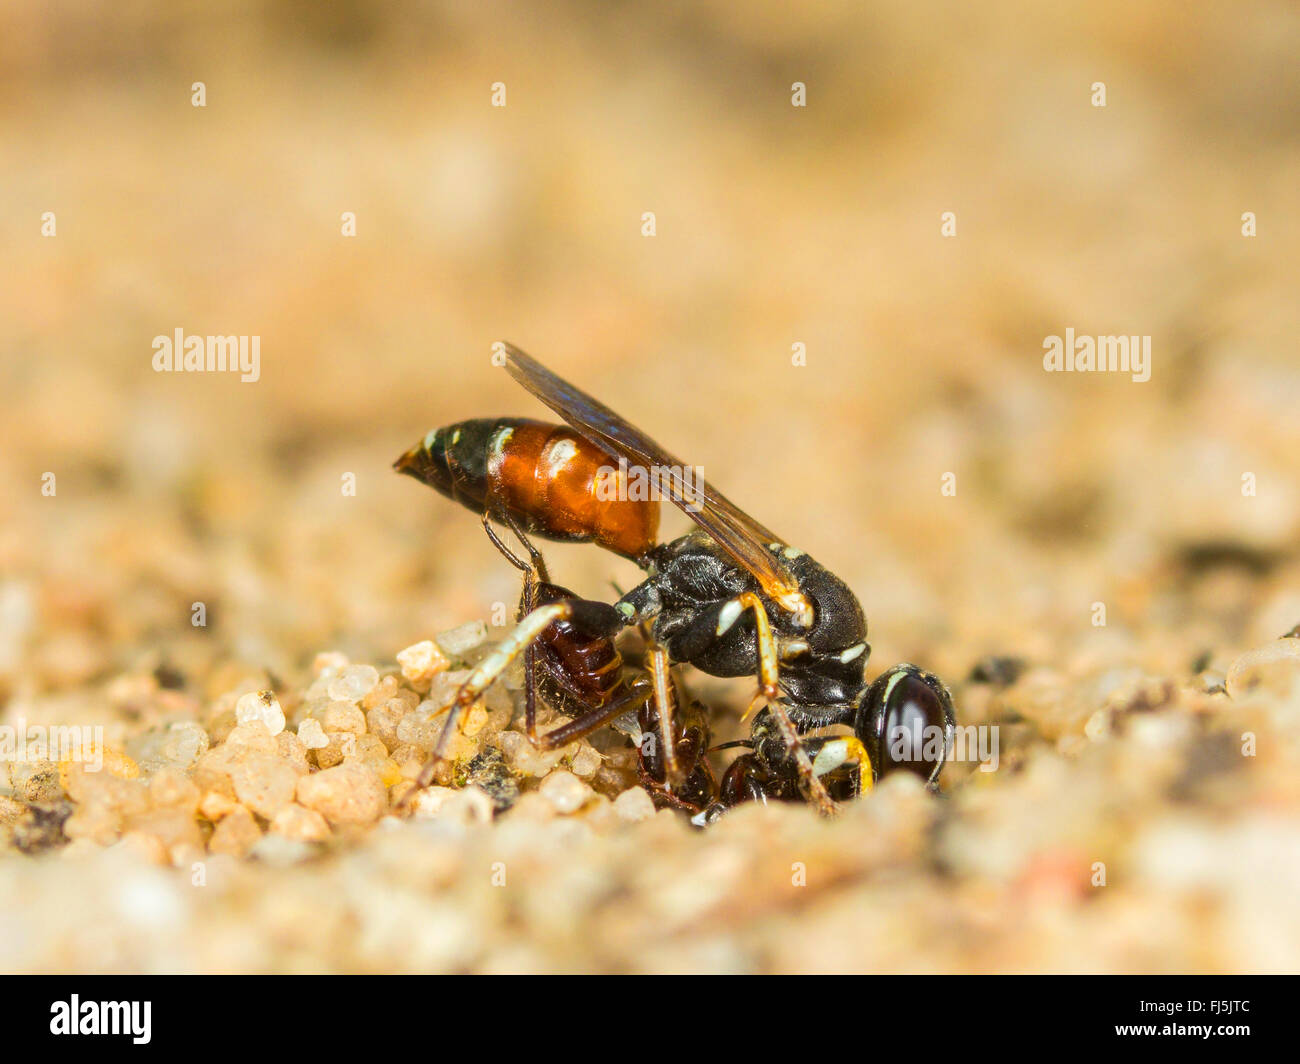 Digger wasp (Dinetus pictus), Femme avec une larve Himacerus mirmicoides-bug à l'entrée du nid, Allemagne Banque D'Images